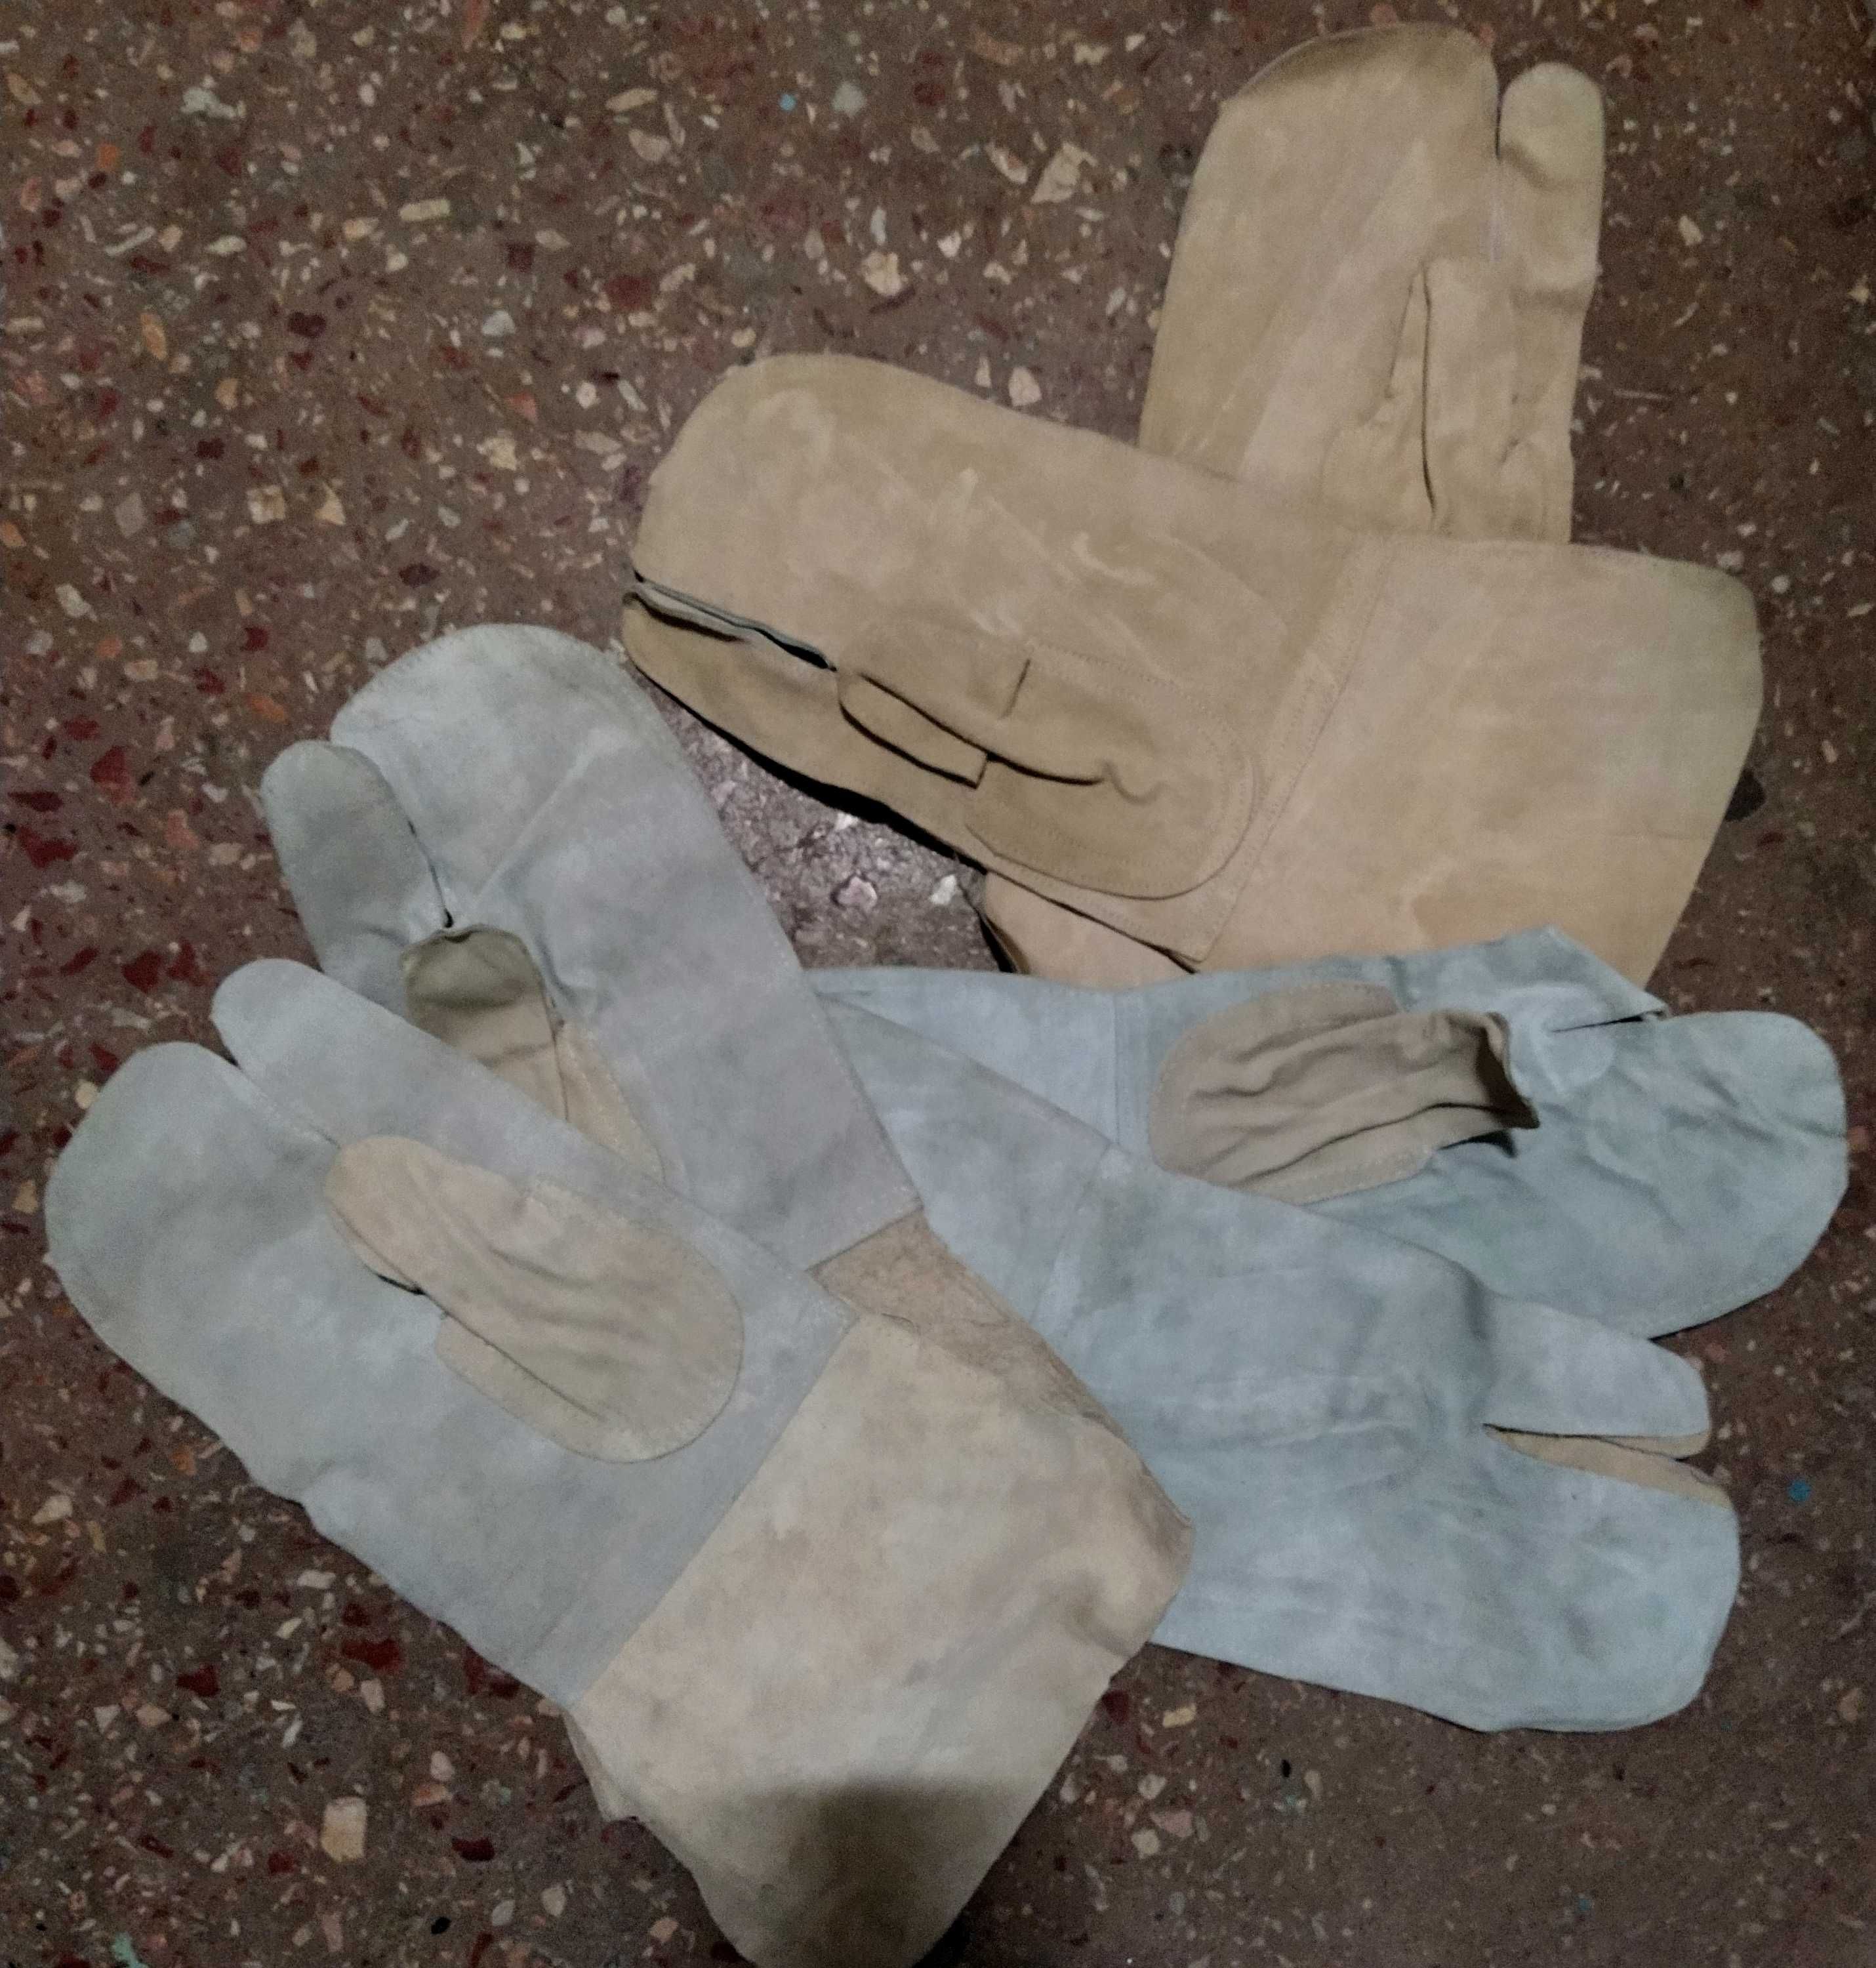 Перчатки сварочные рукавицы трехпалые кожаные краги 42 грн новые !